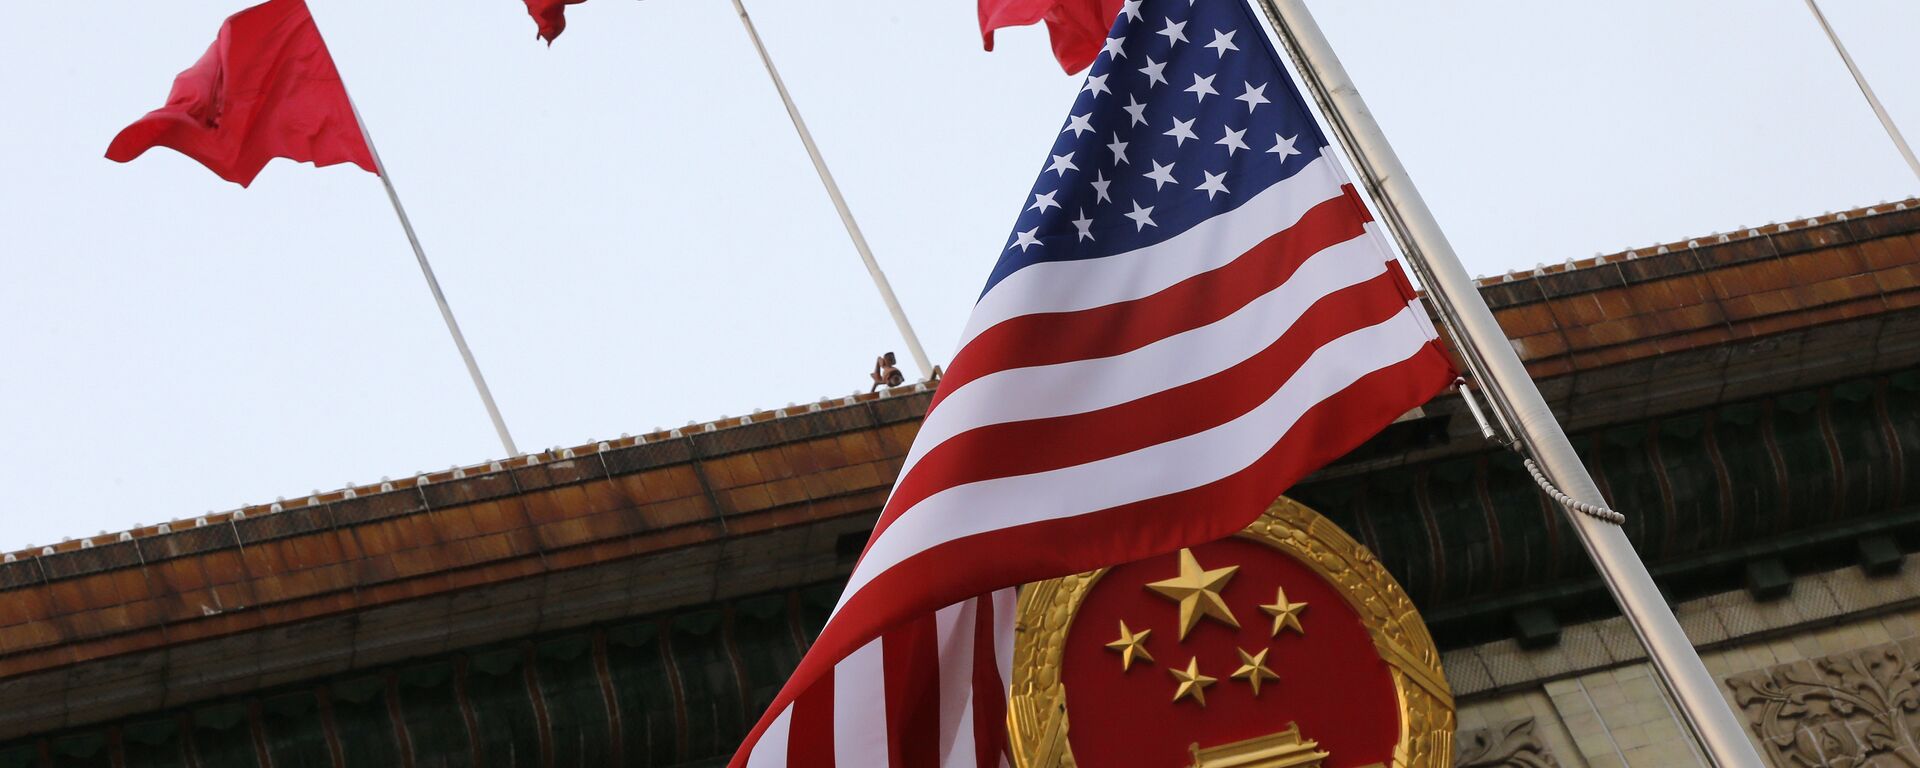 Флаги США и Китая во время визита Дональда Трампа в Пекин 9 ноября 2017 года - Sputnik Латвия, 1920, 14.02.2021